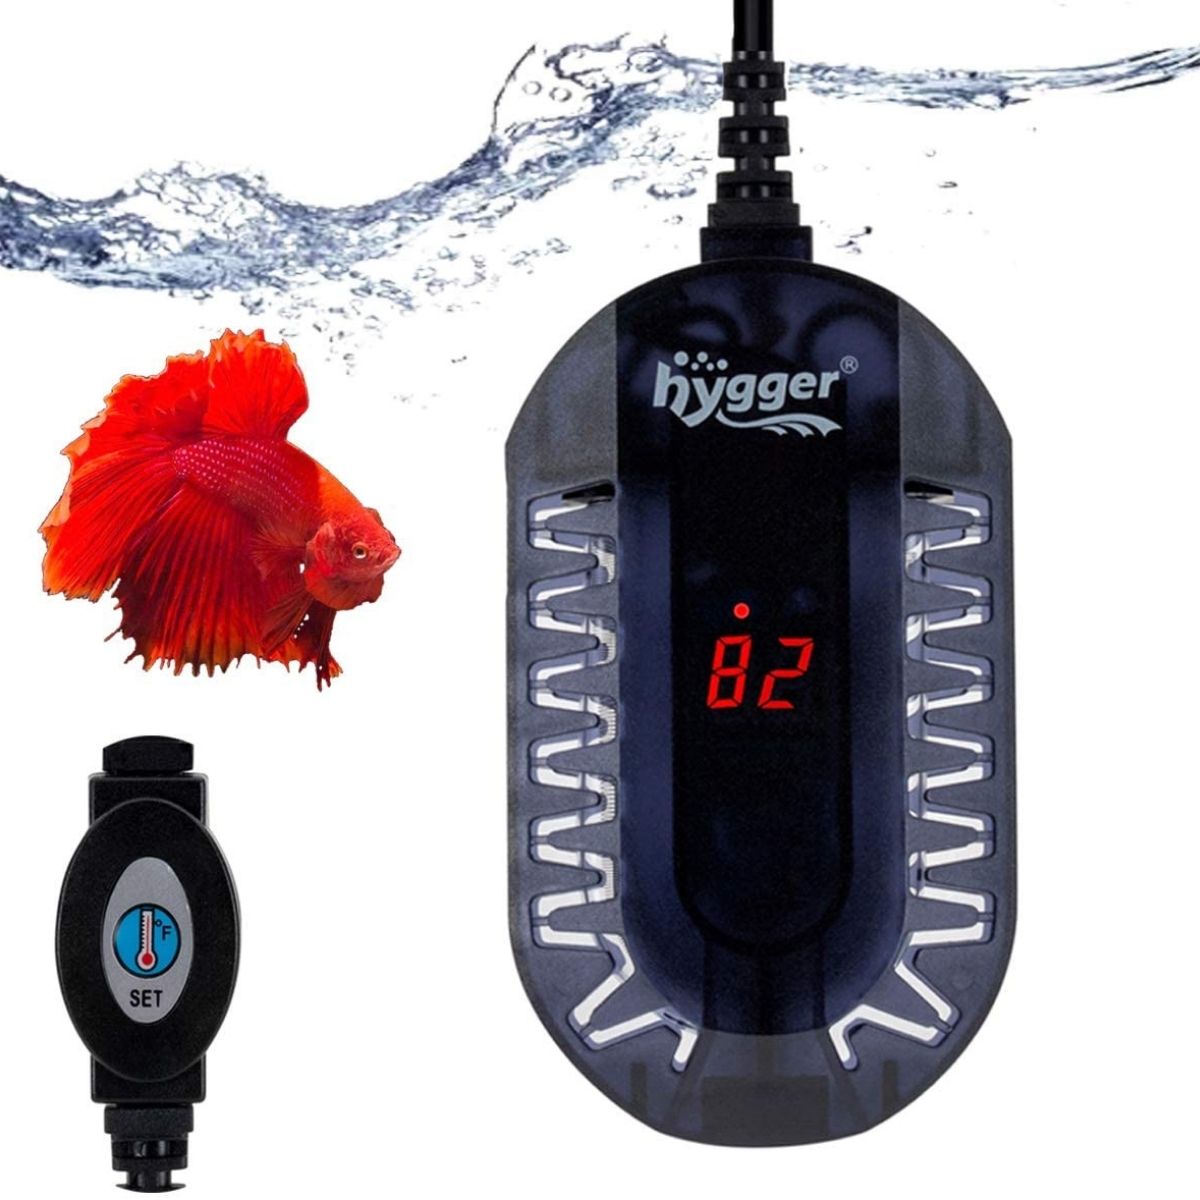 Hygger Submersible Mini Aquarium Heater